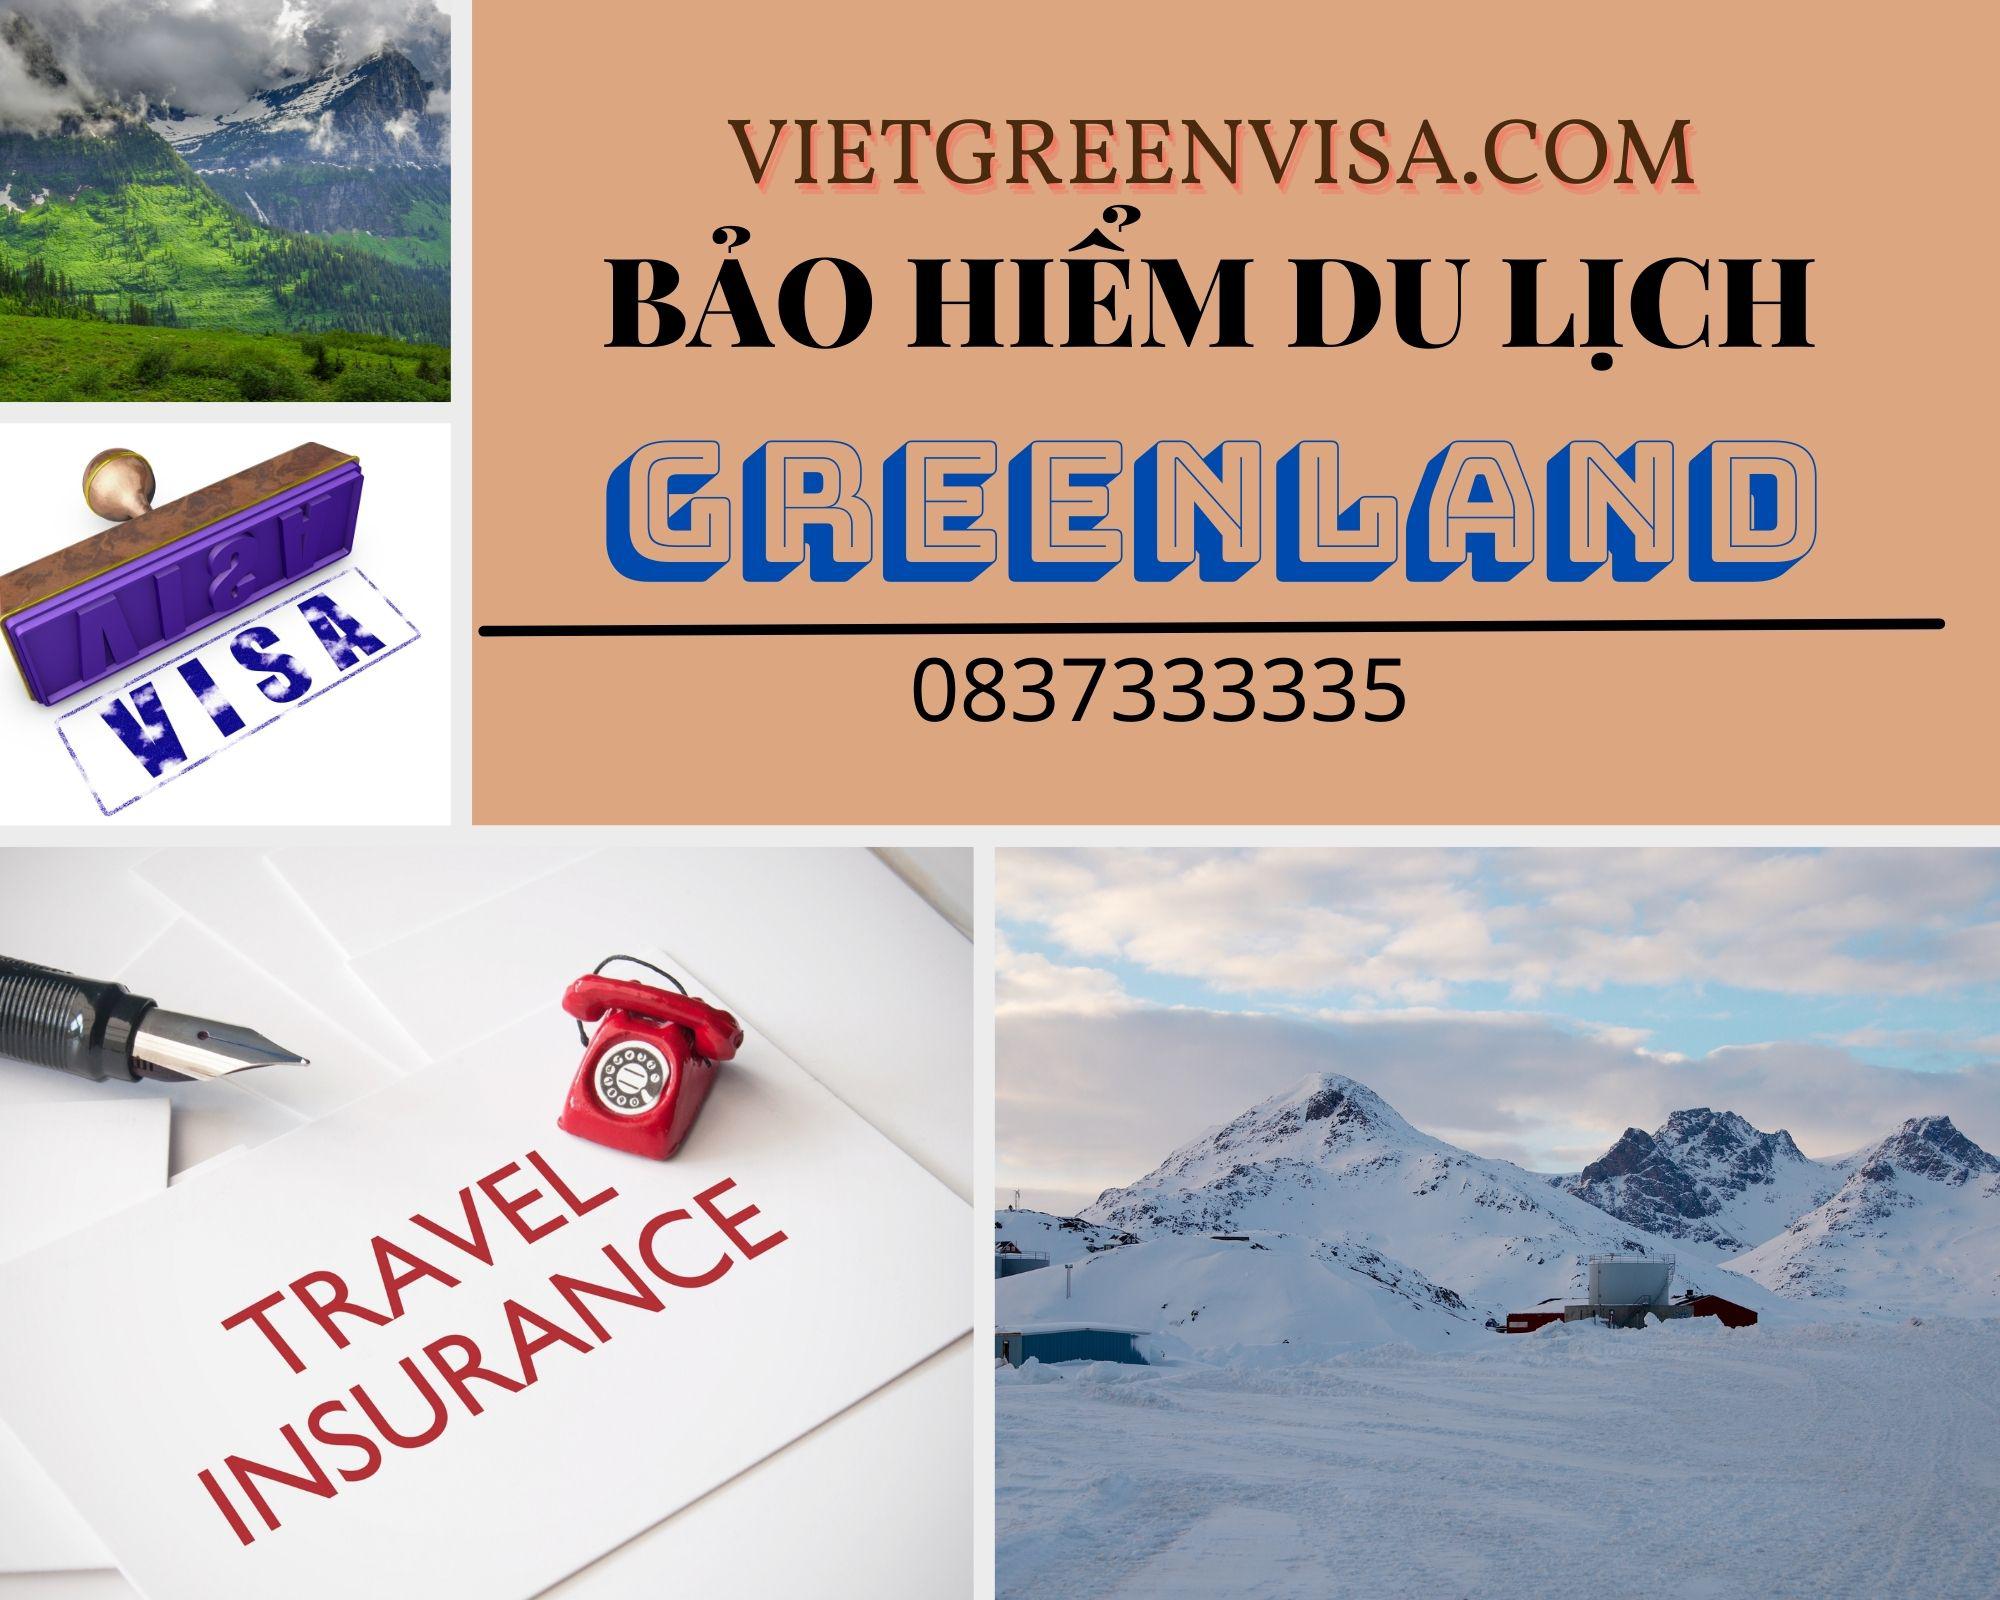 Dịch vụ bảo hiểm du lịch xin visa Greenland giá rẻ nhất